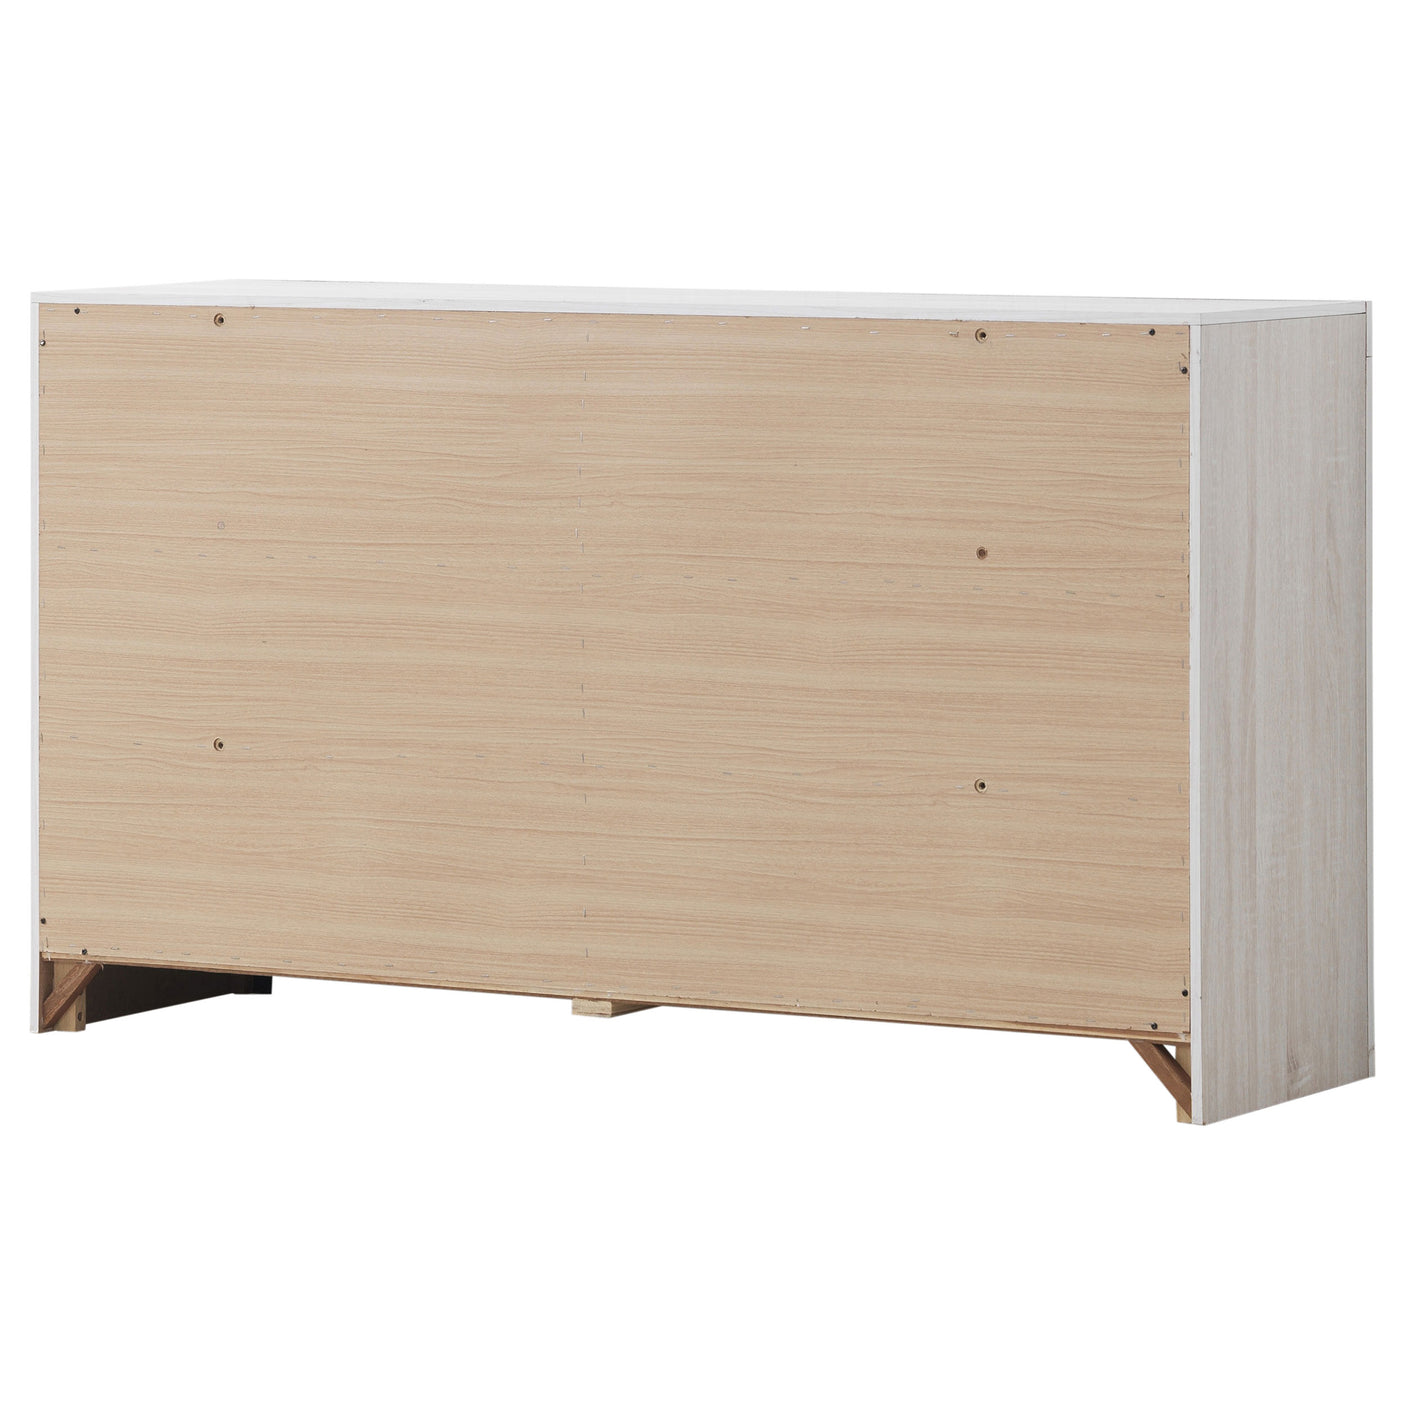 Dresser - Brantford 6-drawer Dresser Coastal White